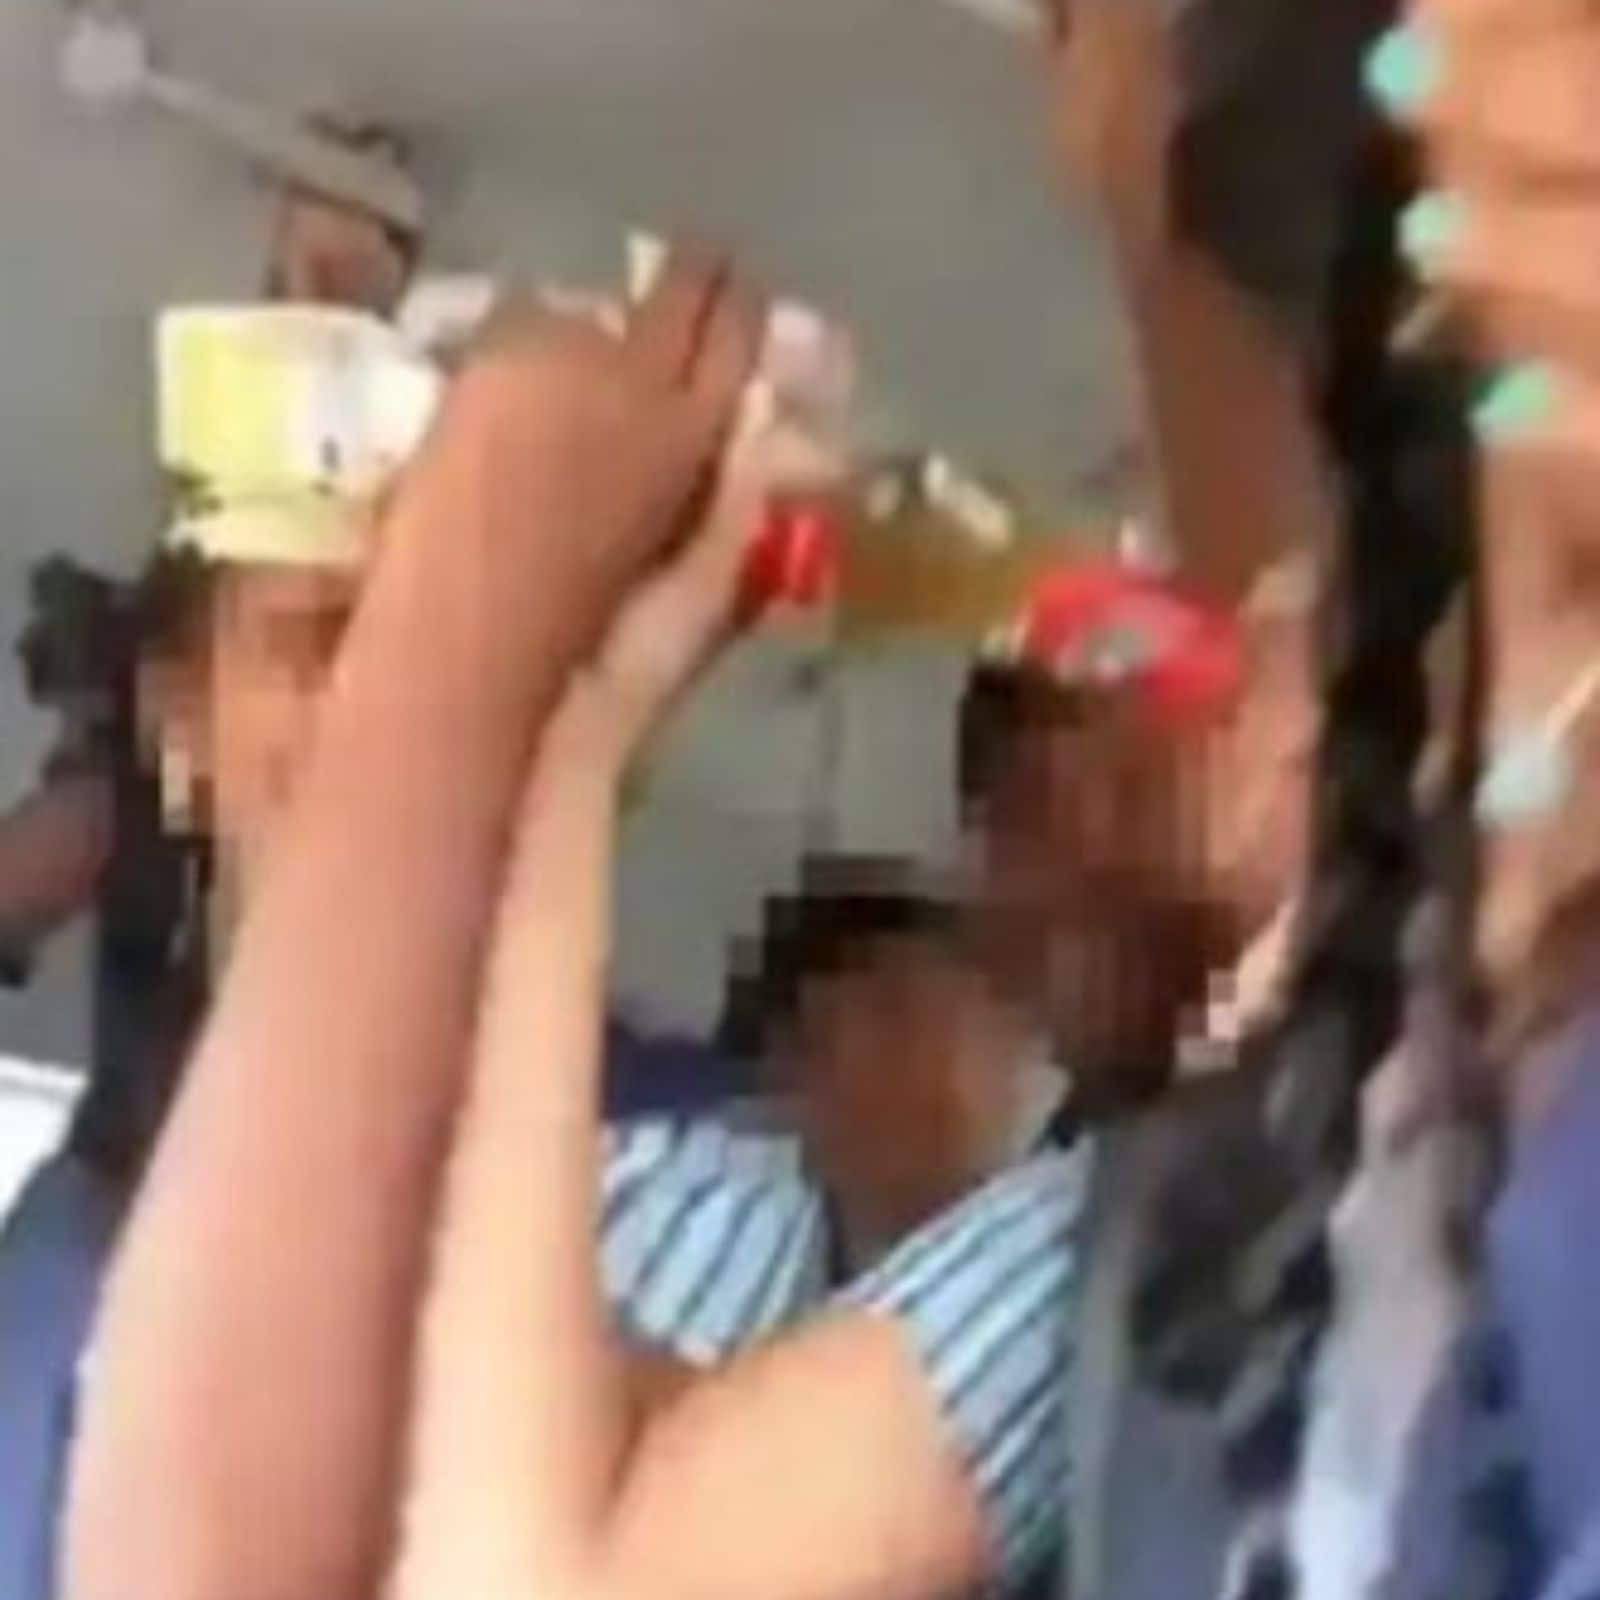 Hot Kannada School Girl Sex - WATCH: Video of Tamil Nadu Students Drinking Beer in Bus Goes Viral - News18